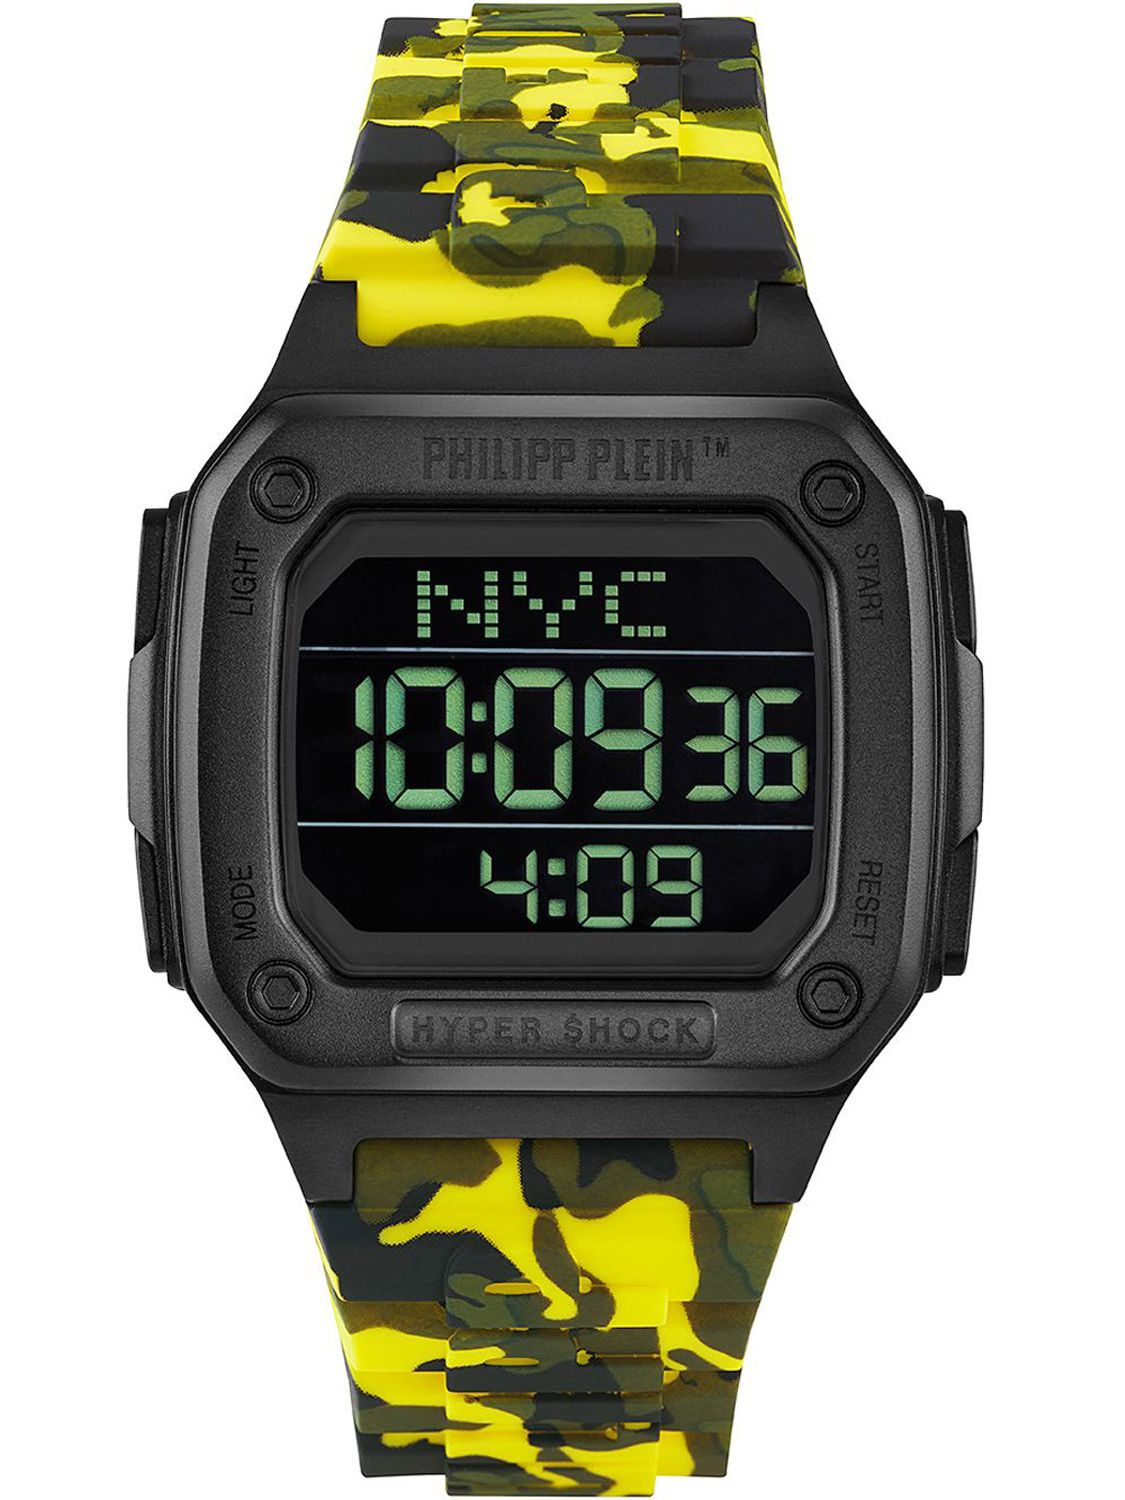 Philipp Plein Digital Watch Hyper $hock Camouflage Yellow